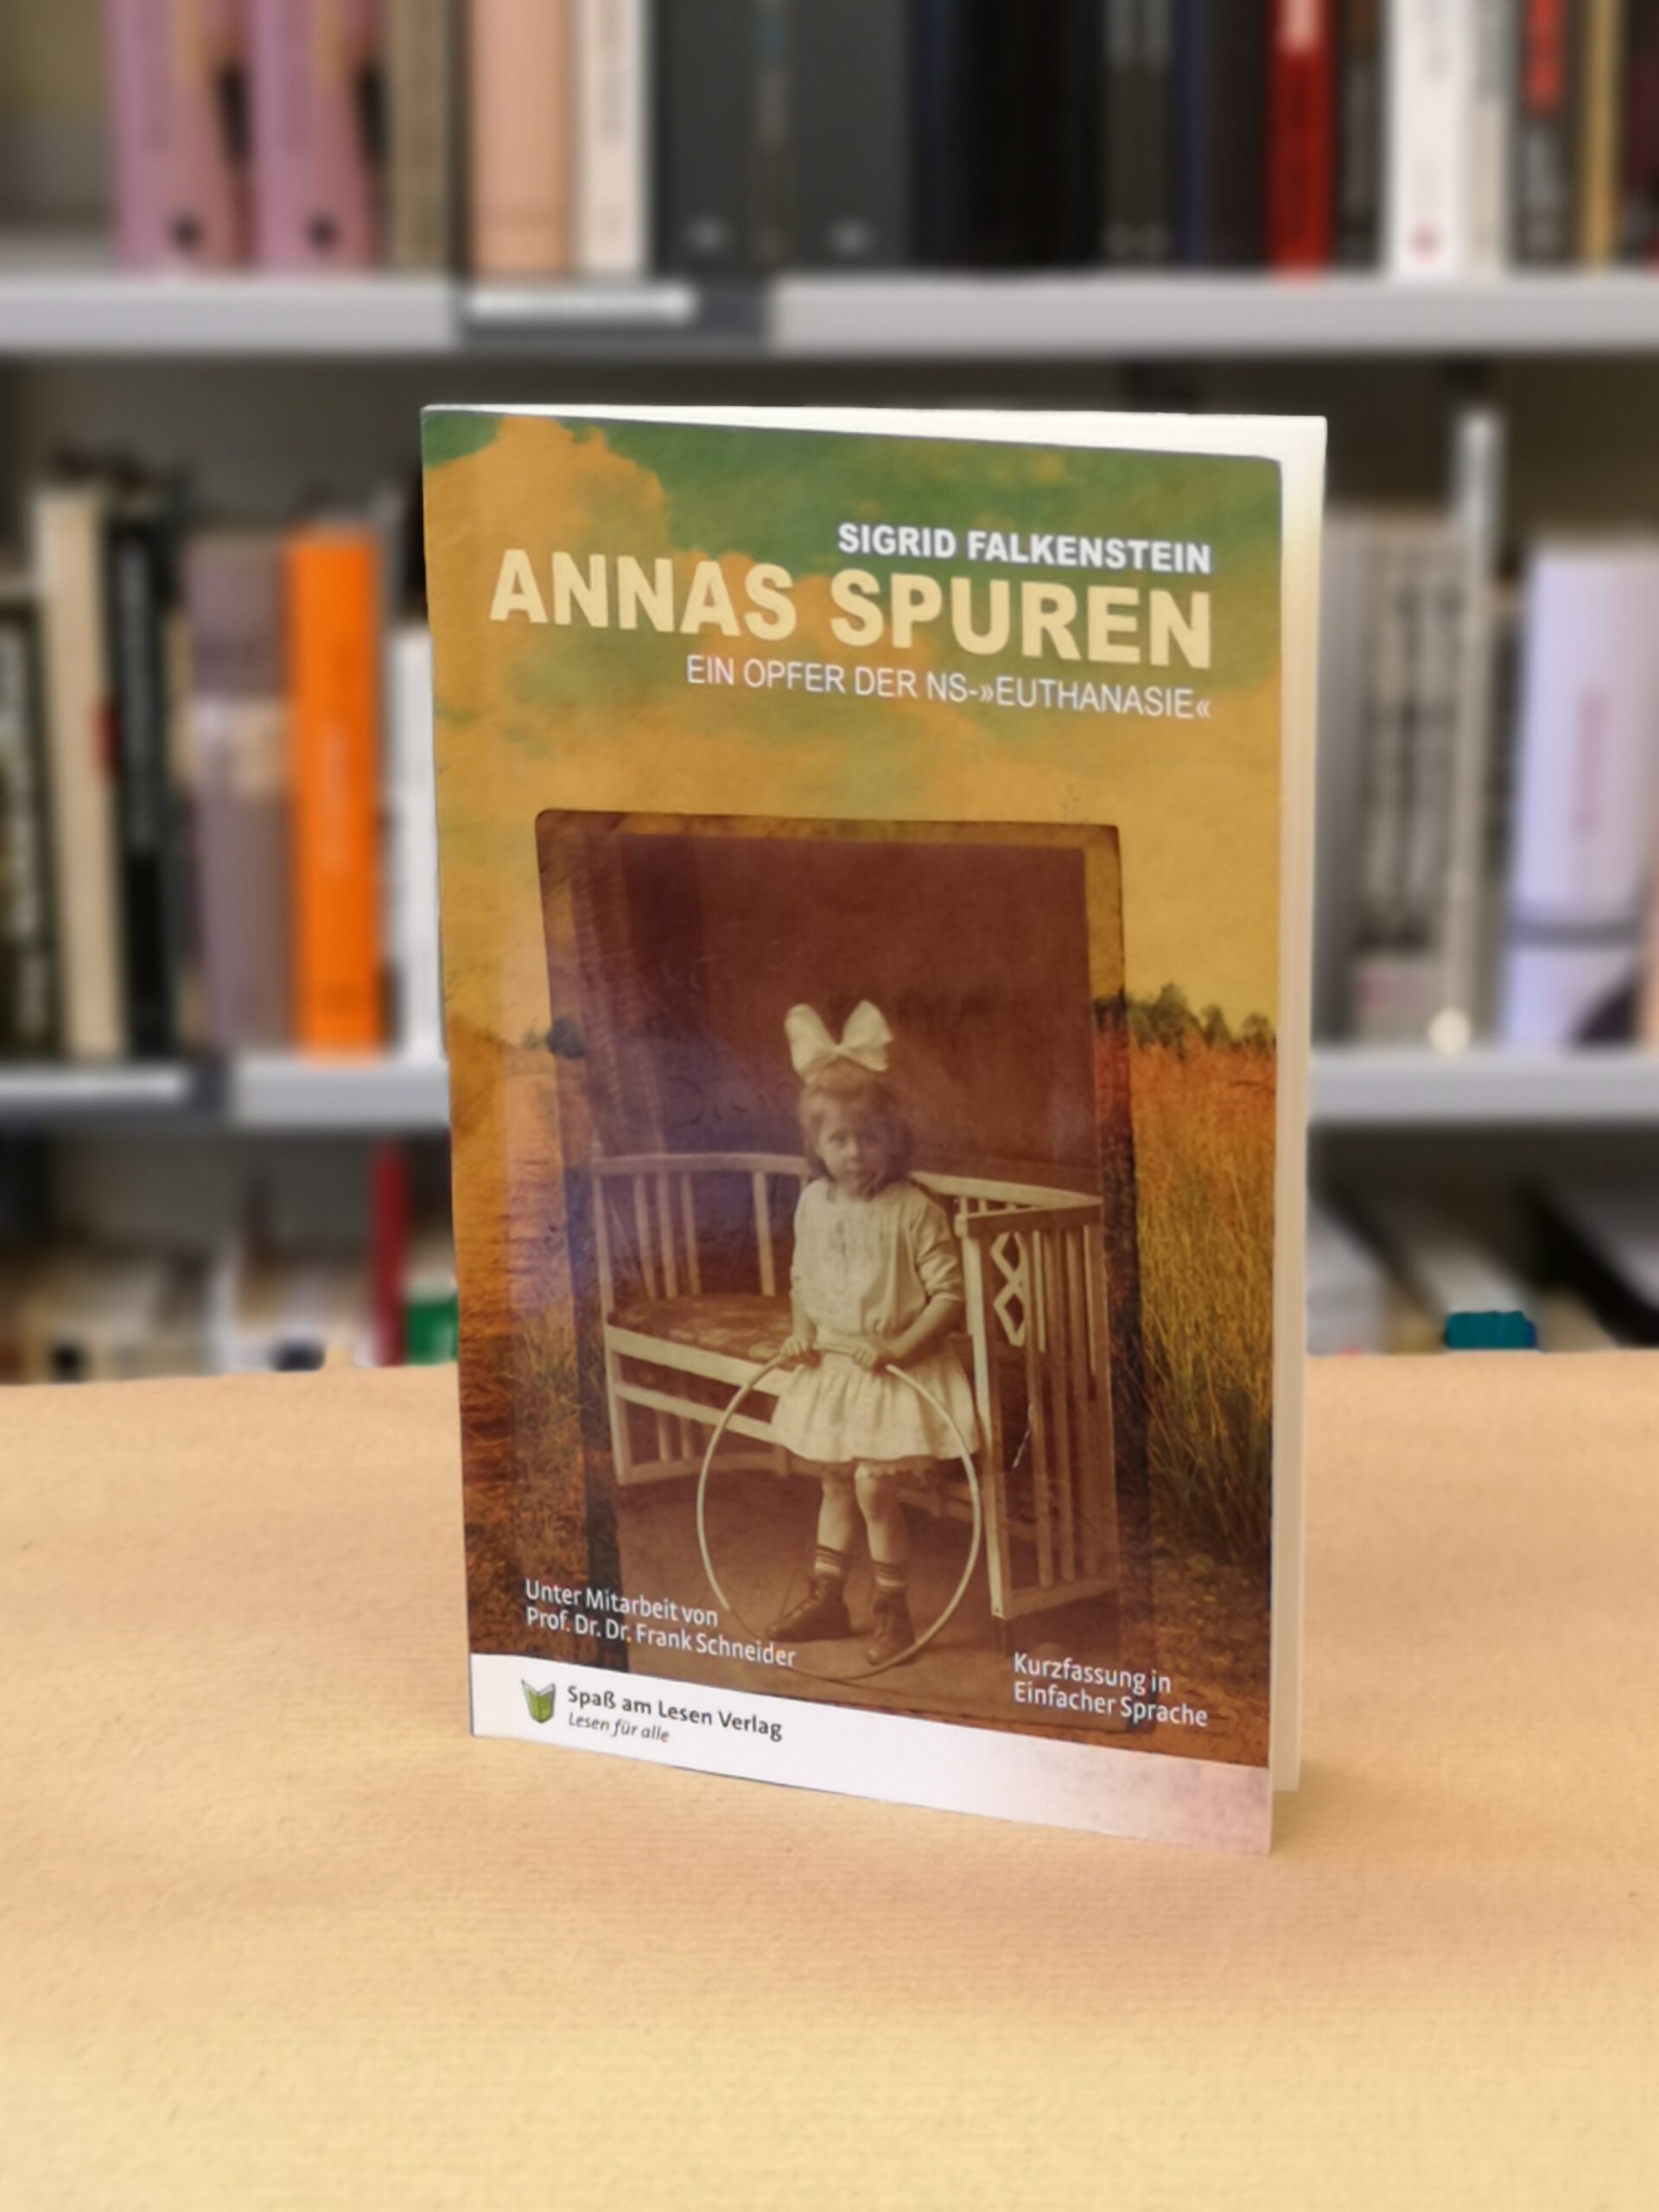 Auf dem Cover des Buch ist ein Foto von Anna und der Titel. Im Hintergund ein Bücherregal. Das Foto ist in Farbe.